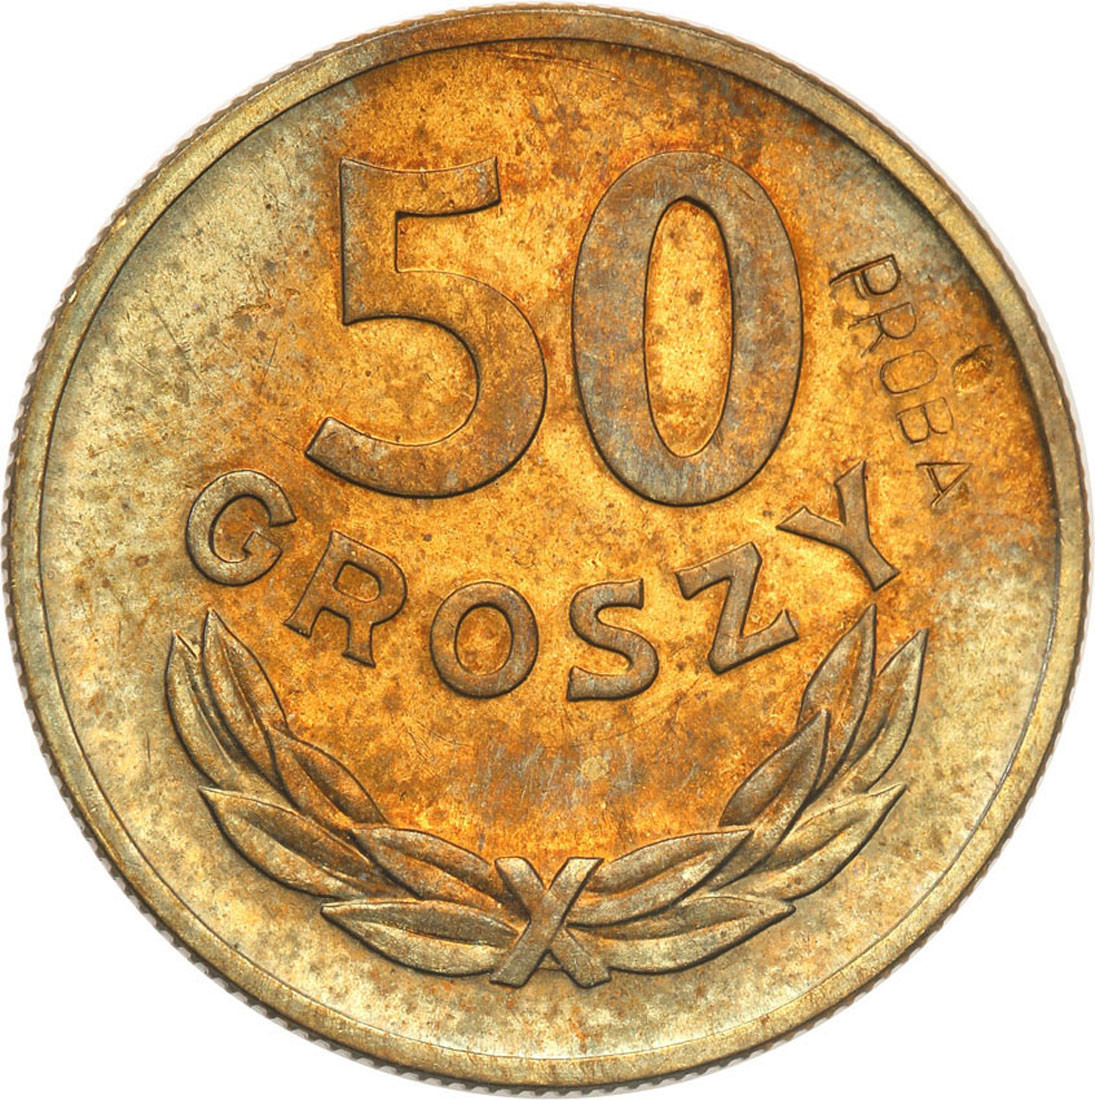 PRL. PRÓBA miedzionikiel 50 groszy 1949